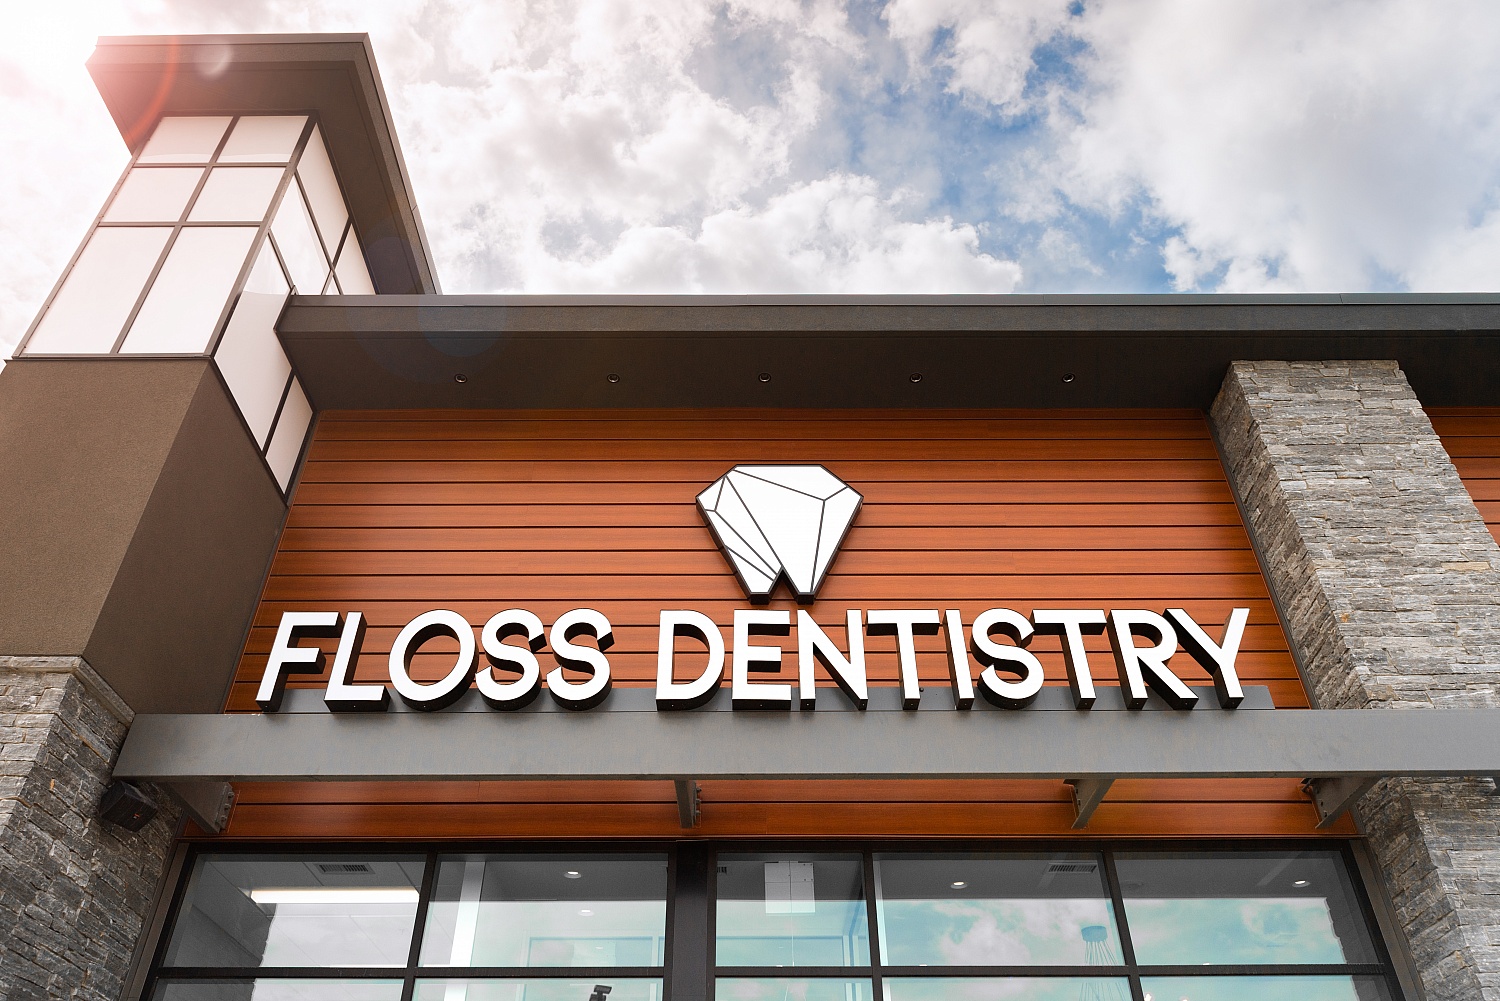 Floss-Dentistry-2020-1523.jpg